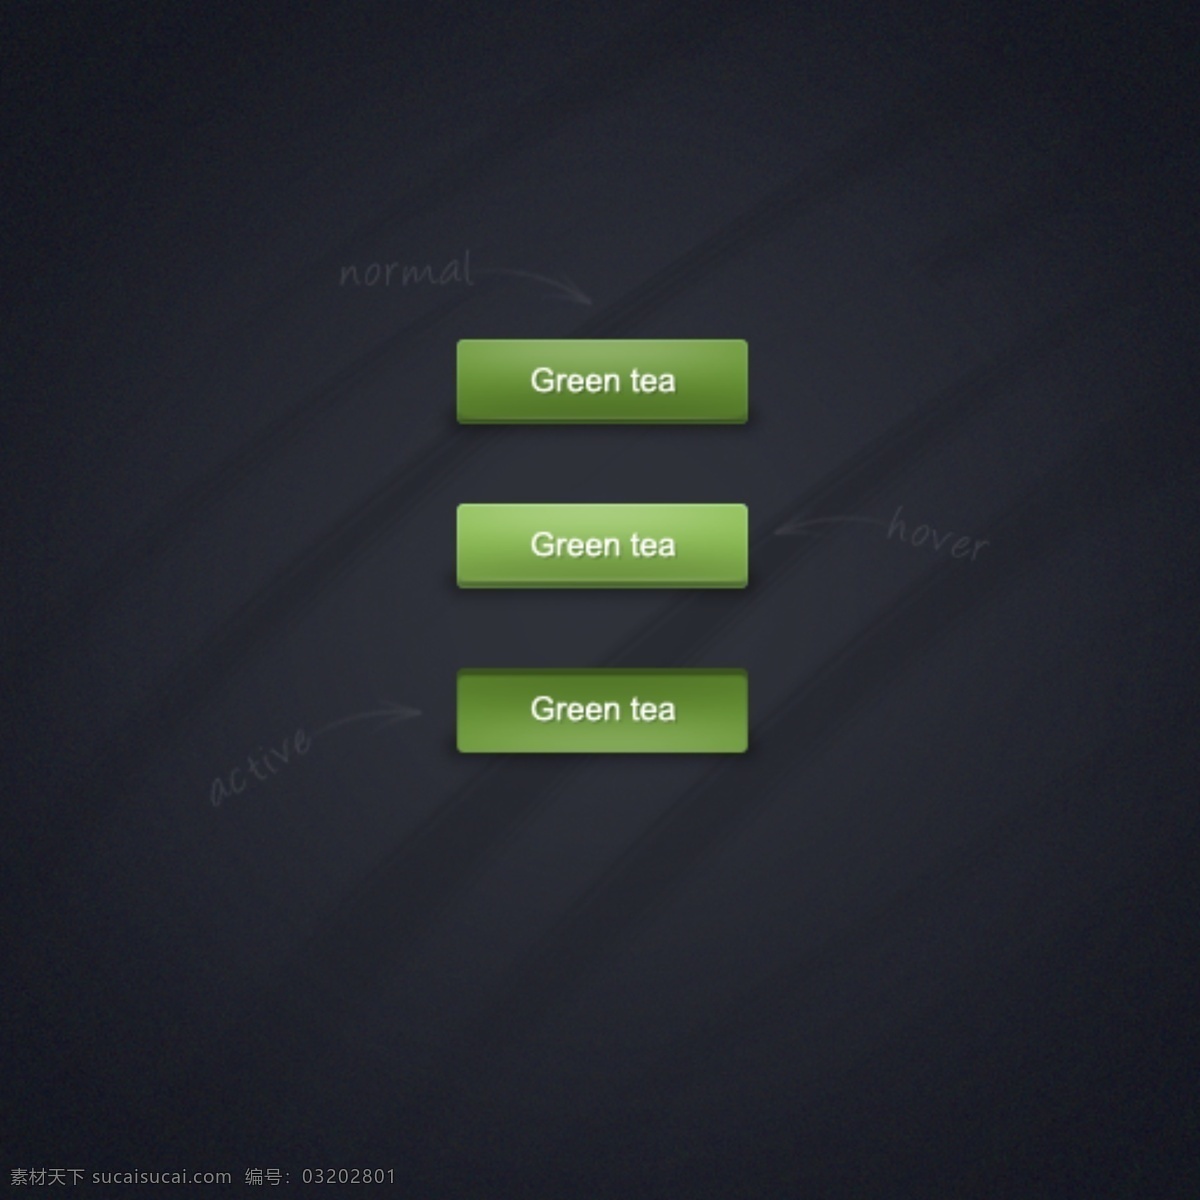 绿茶 web 界面 按钮 设置 创意 高分辨率 接口 绿 免费 清洁 时尚的 现代的 独特的 原始的 设计新的 hd 元素 用户界面 ui元素 详细的 绿茶psd 用户界面元素 矢量图